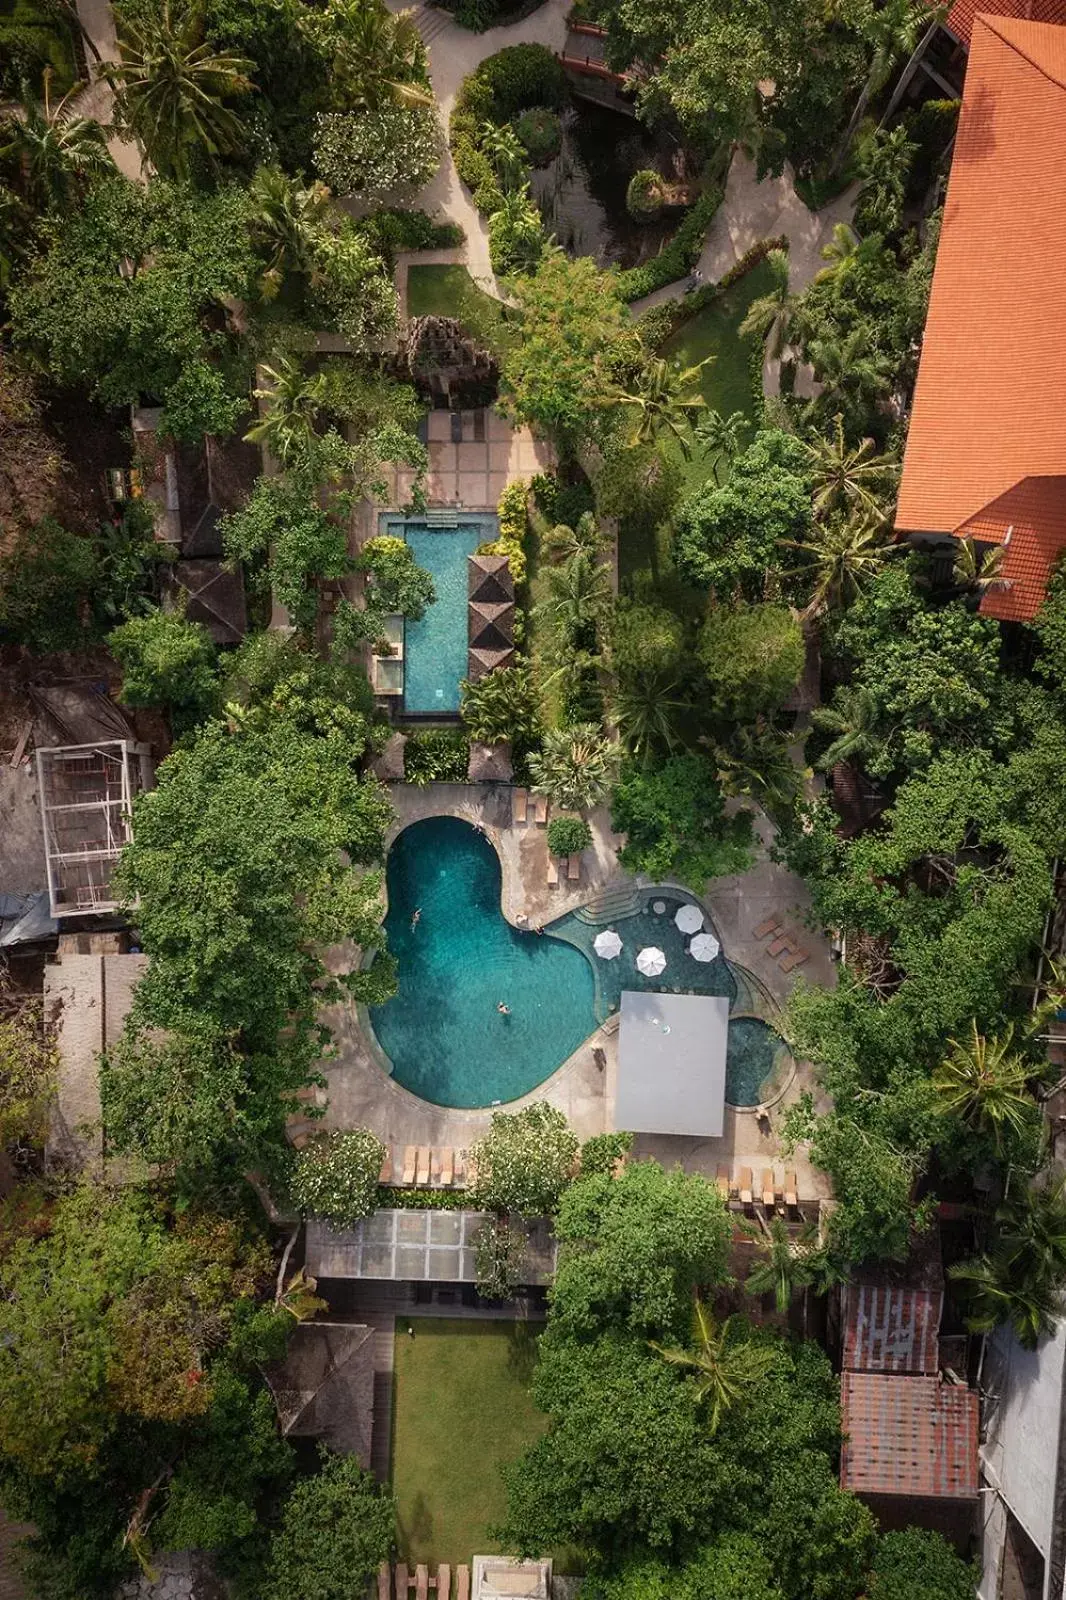 Property building, Pool View in Bali Garden Beach Resort